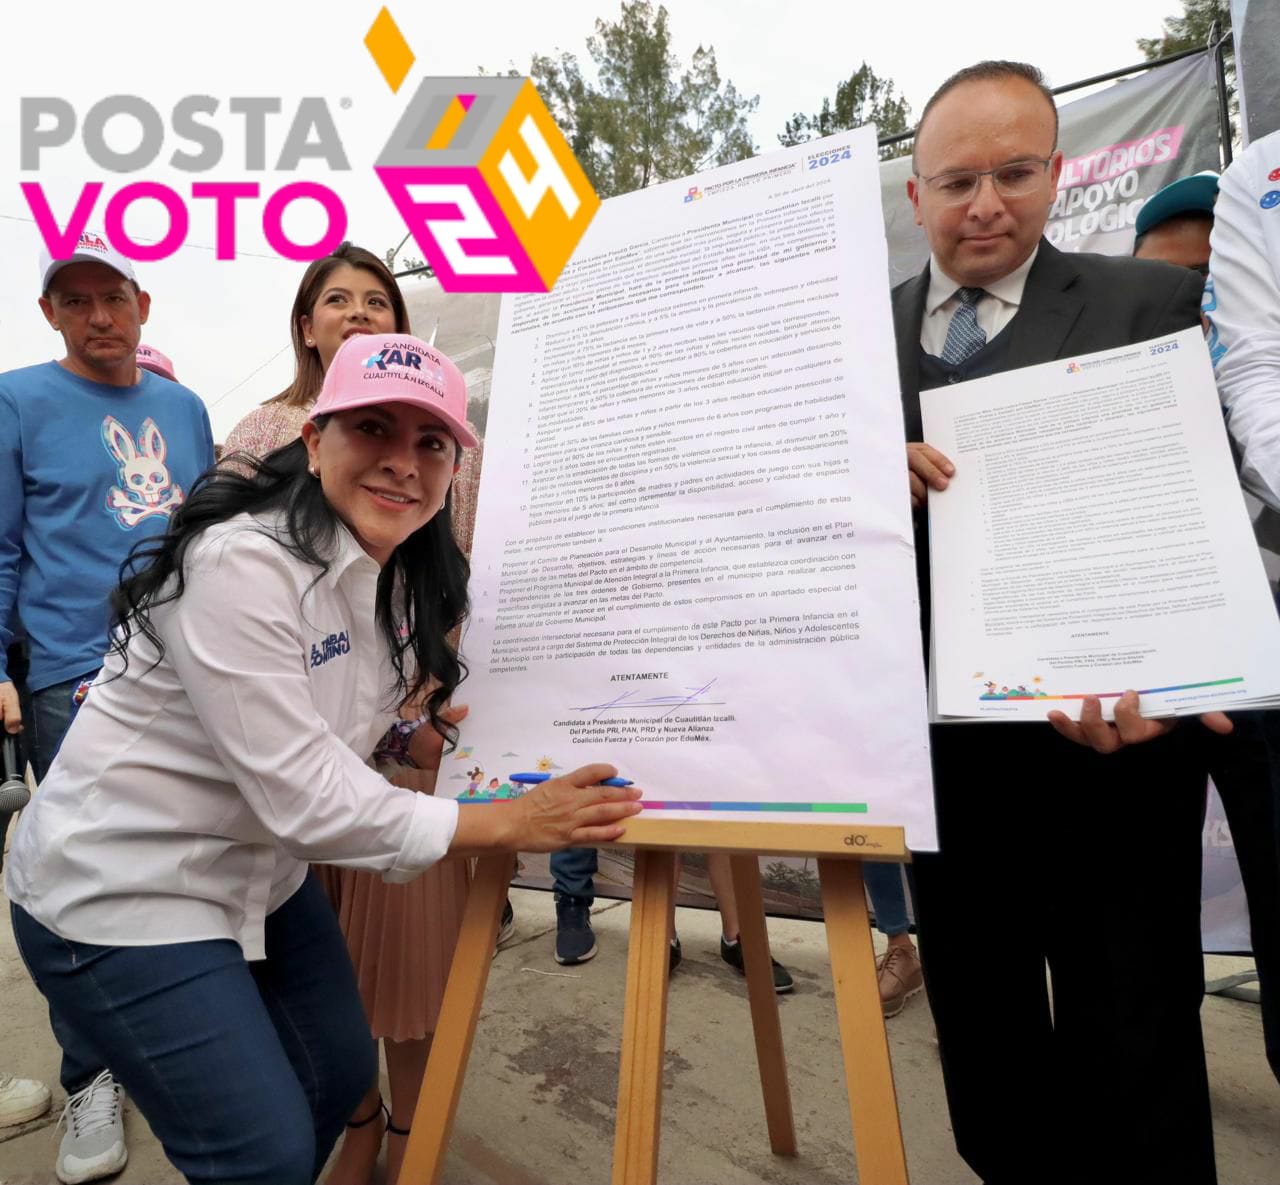 Firma Karla Fiesco pacto por la primera infancia en Cuautitlán Izcalli. Foto: Campaña de Karla Fiesco